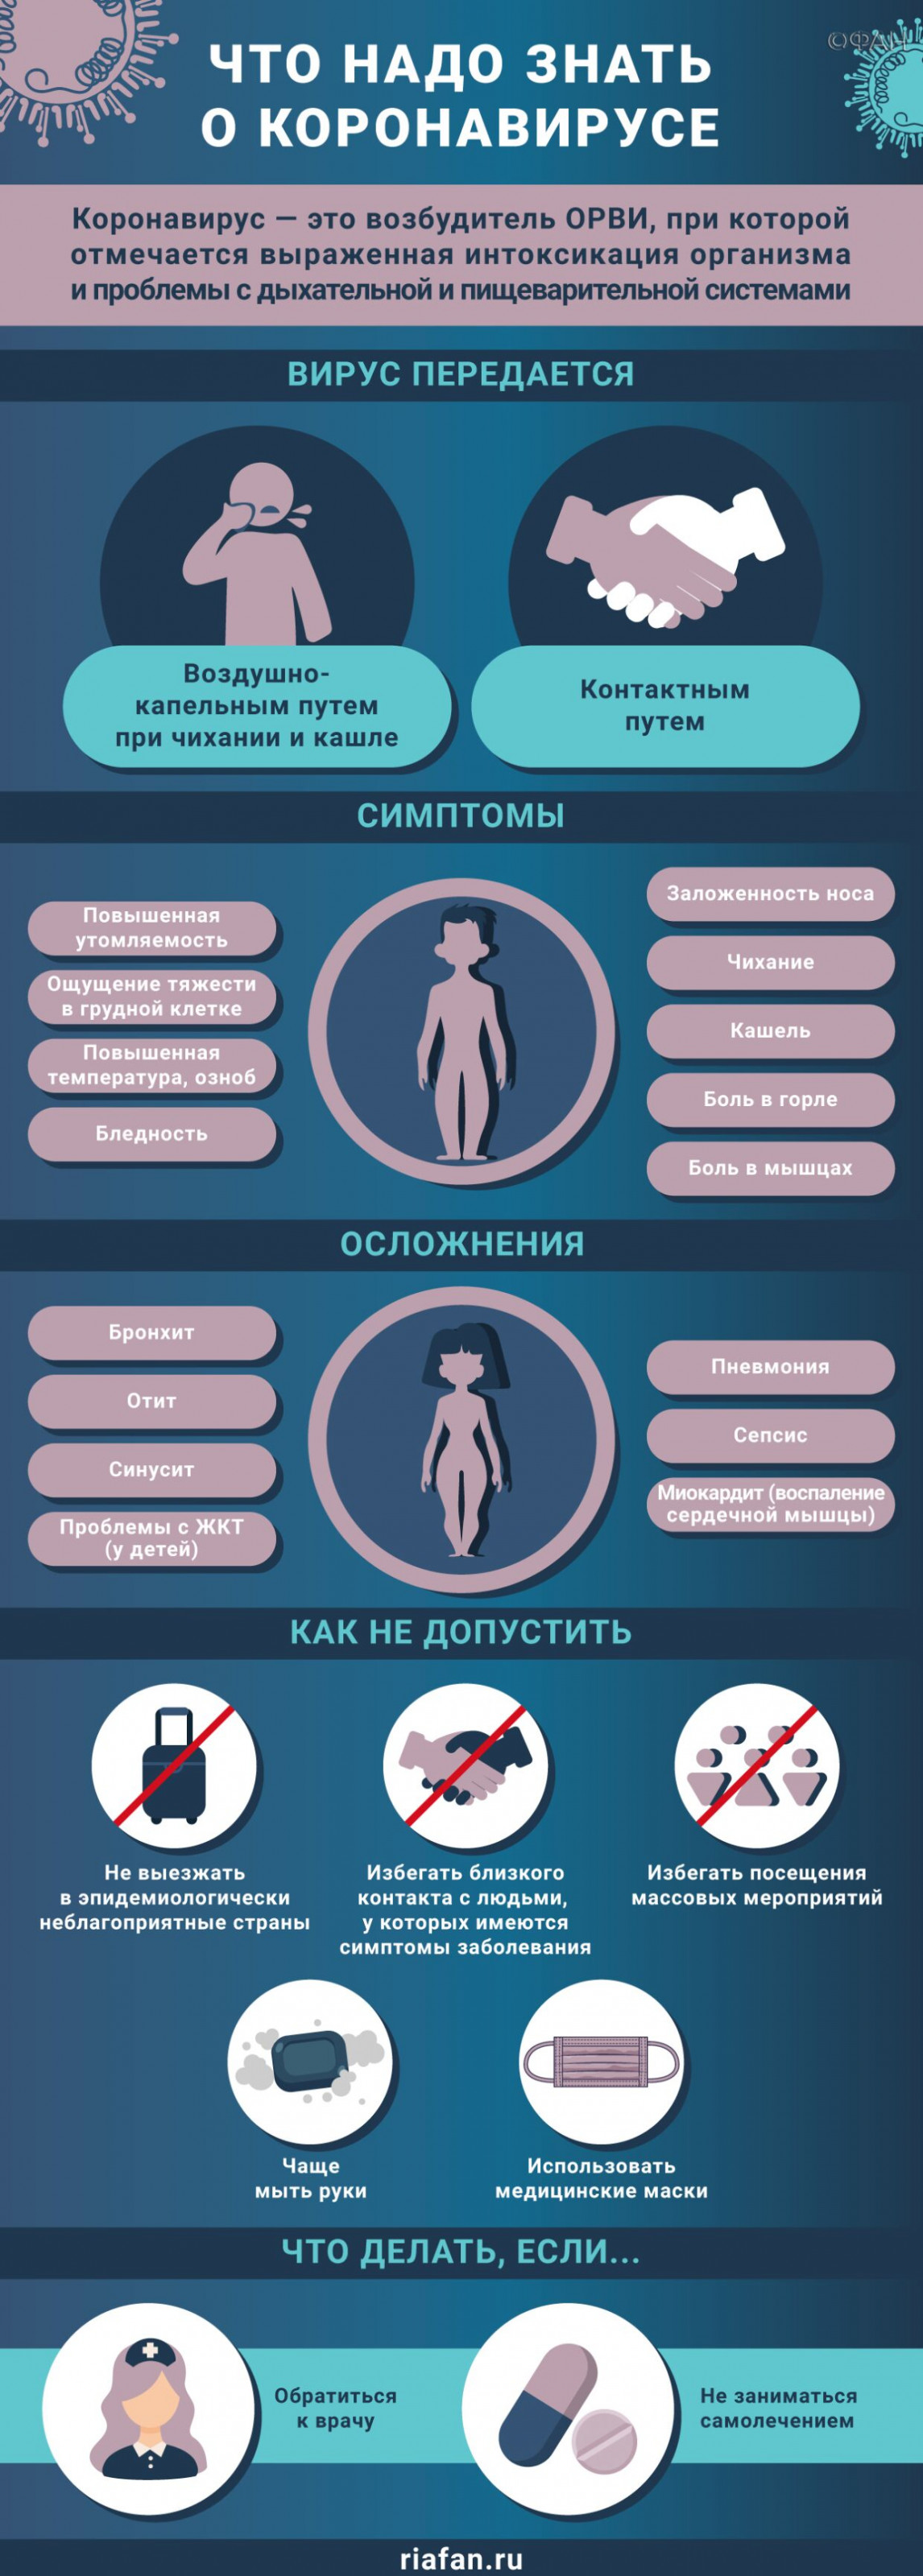 Медики за сутки выявили 193 случая коронавируса в Петербурге